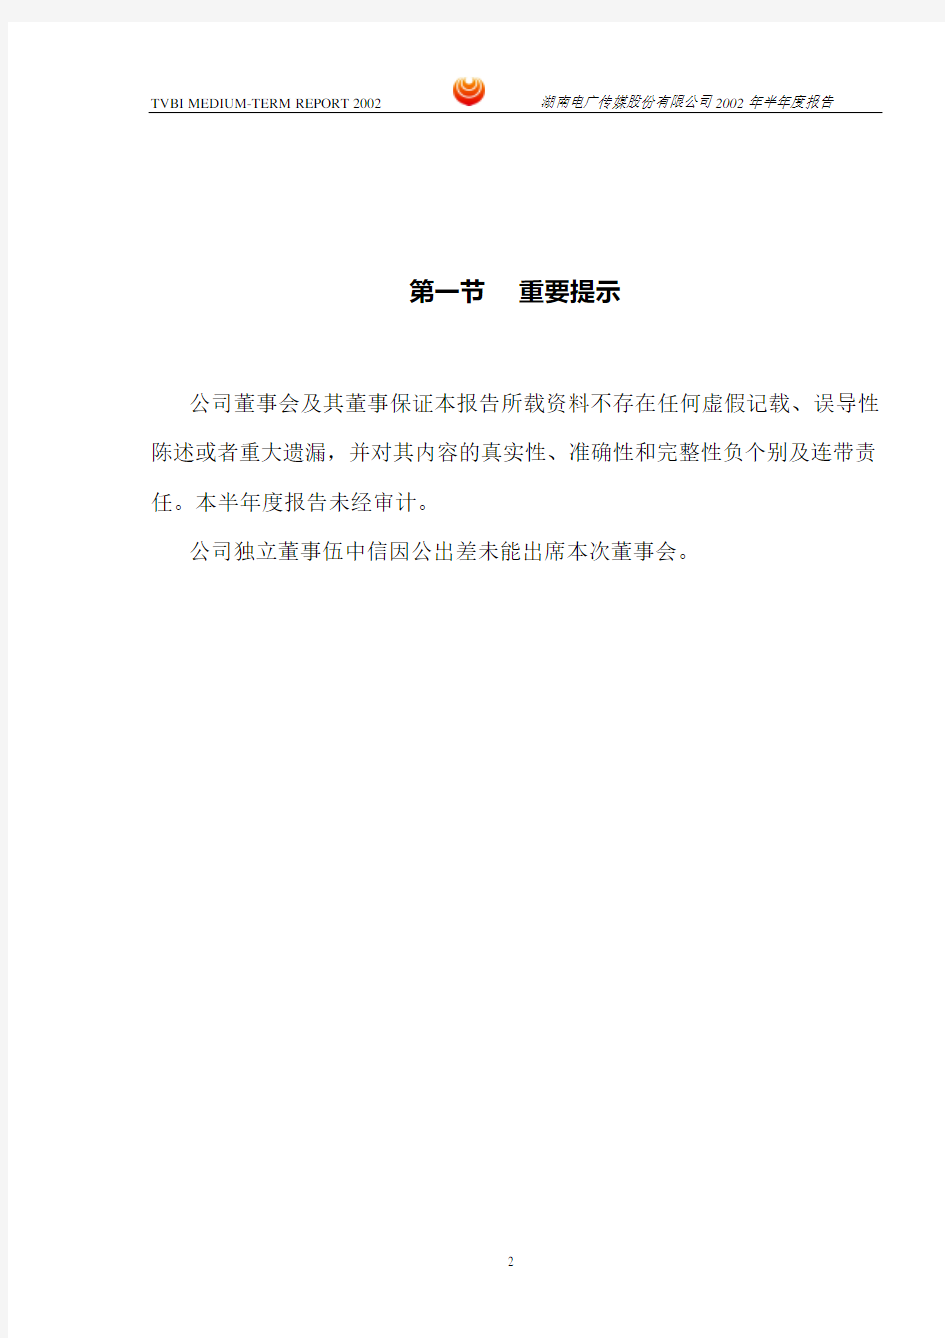 湖南电广传媒股份有限公司 2002 年半年度报告正文